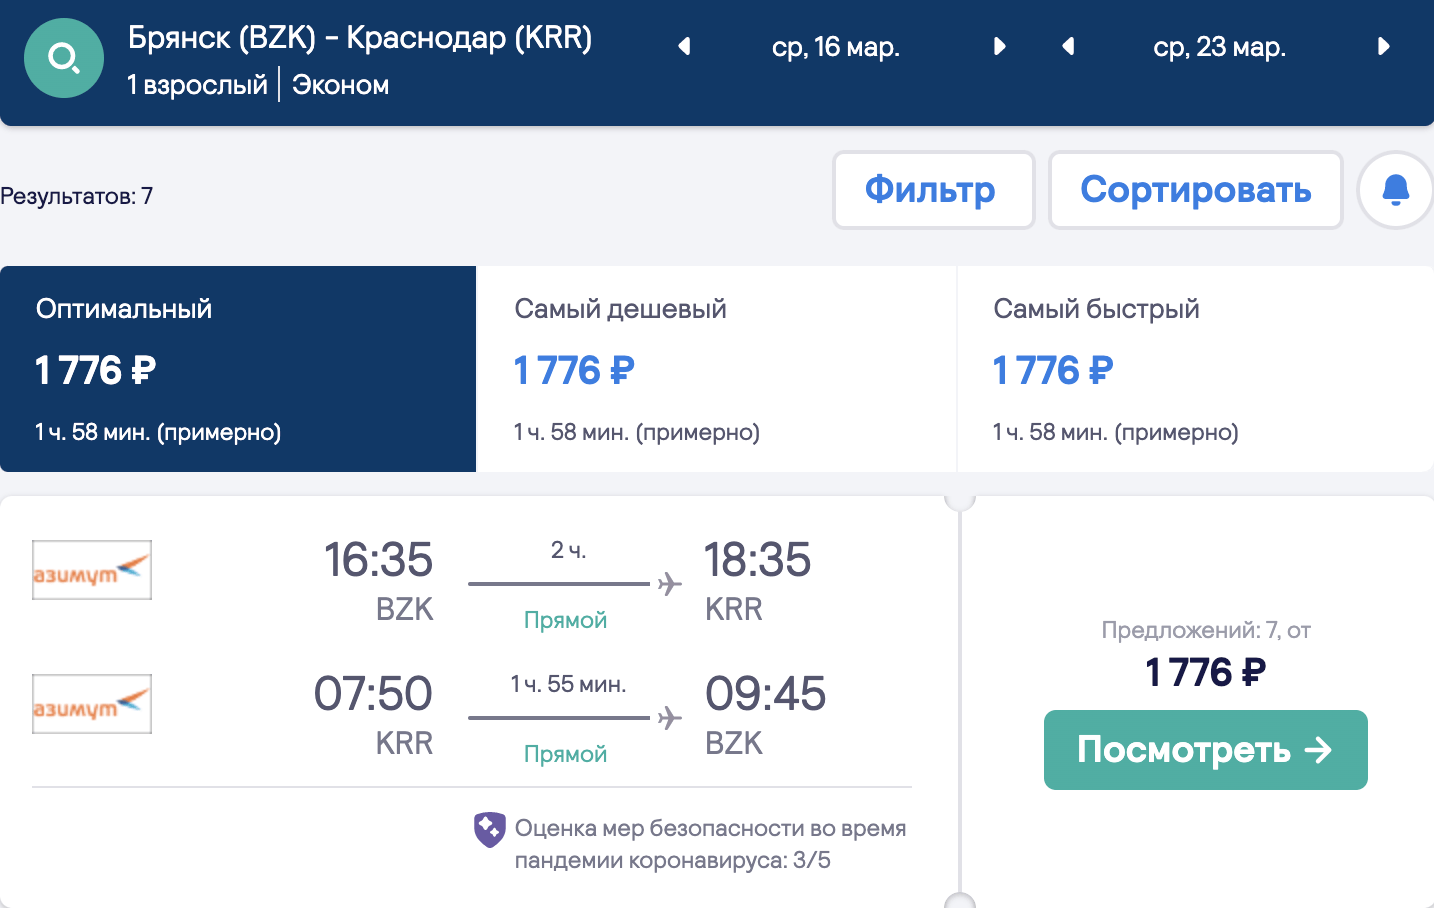 Duży wybór tanich lotów z regionów do Krasnodaru i Minvody od 1800₽ w obie strony